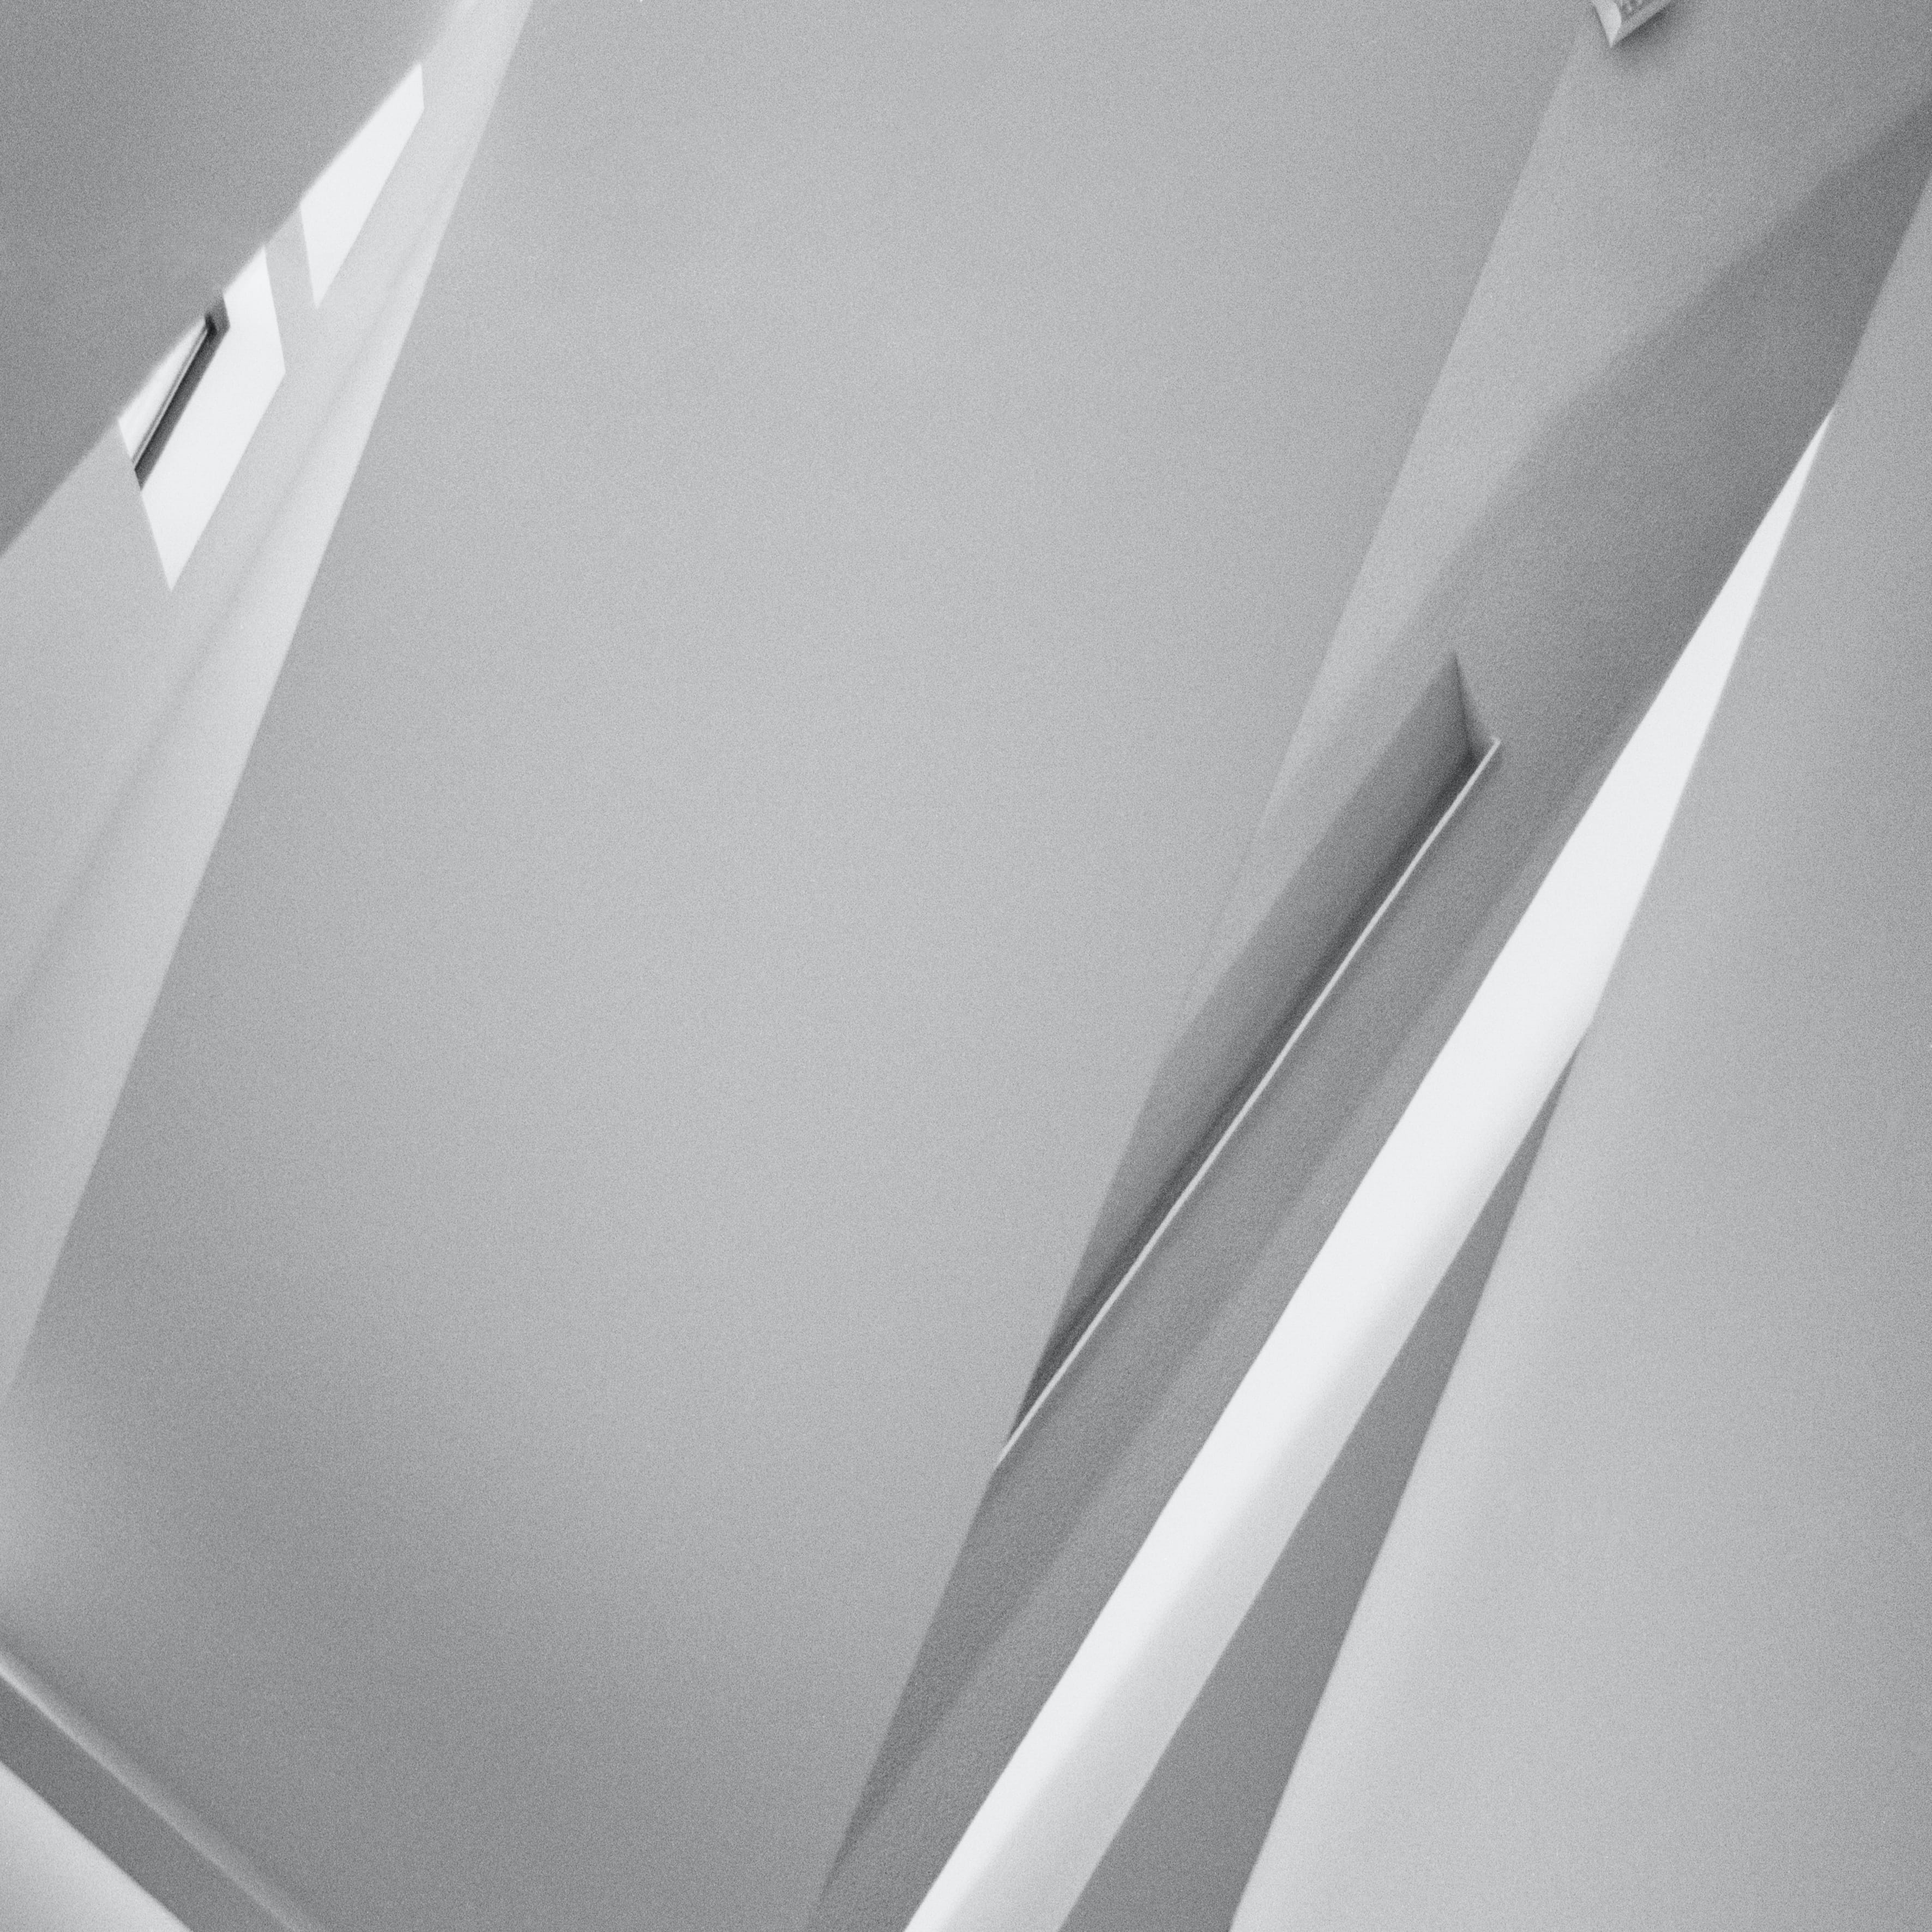 Martin C. Schmidt abstrakte Architektur Fotografie graue minimalistische geometrische Formen und Linien